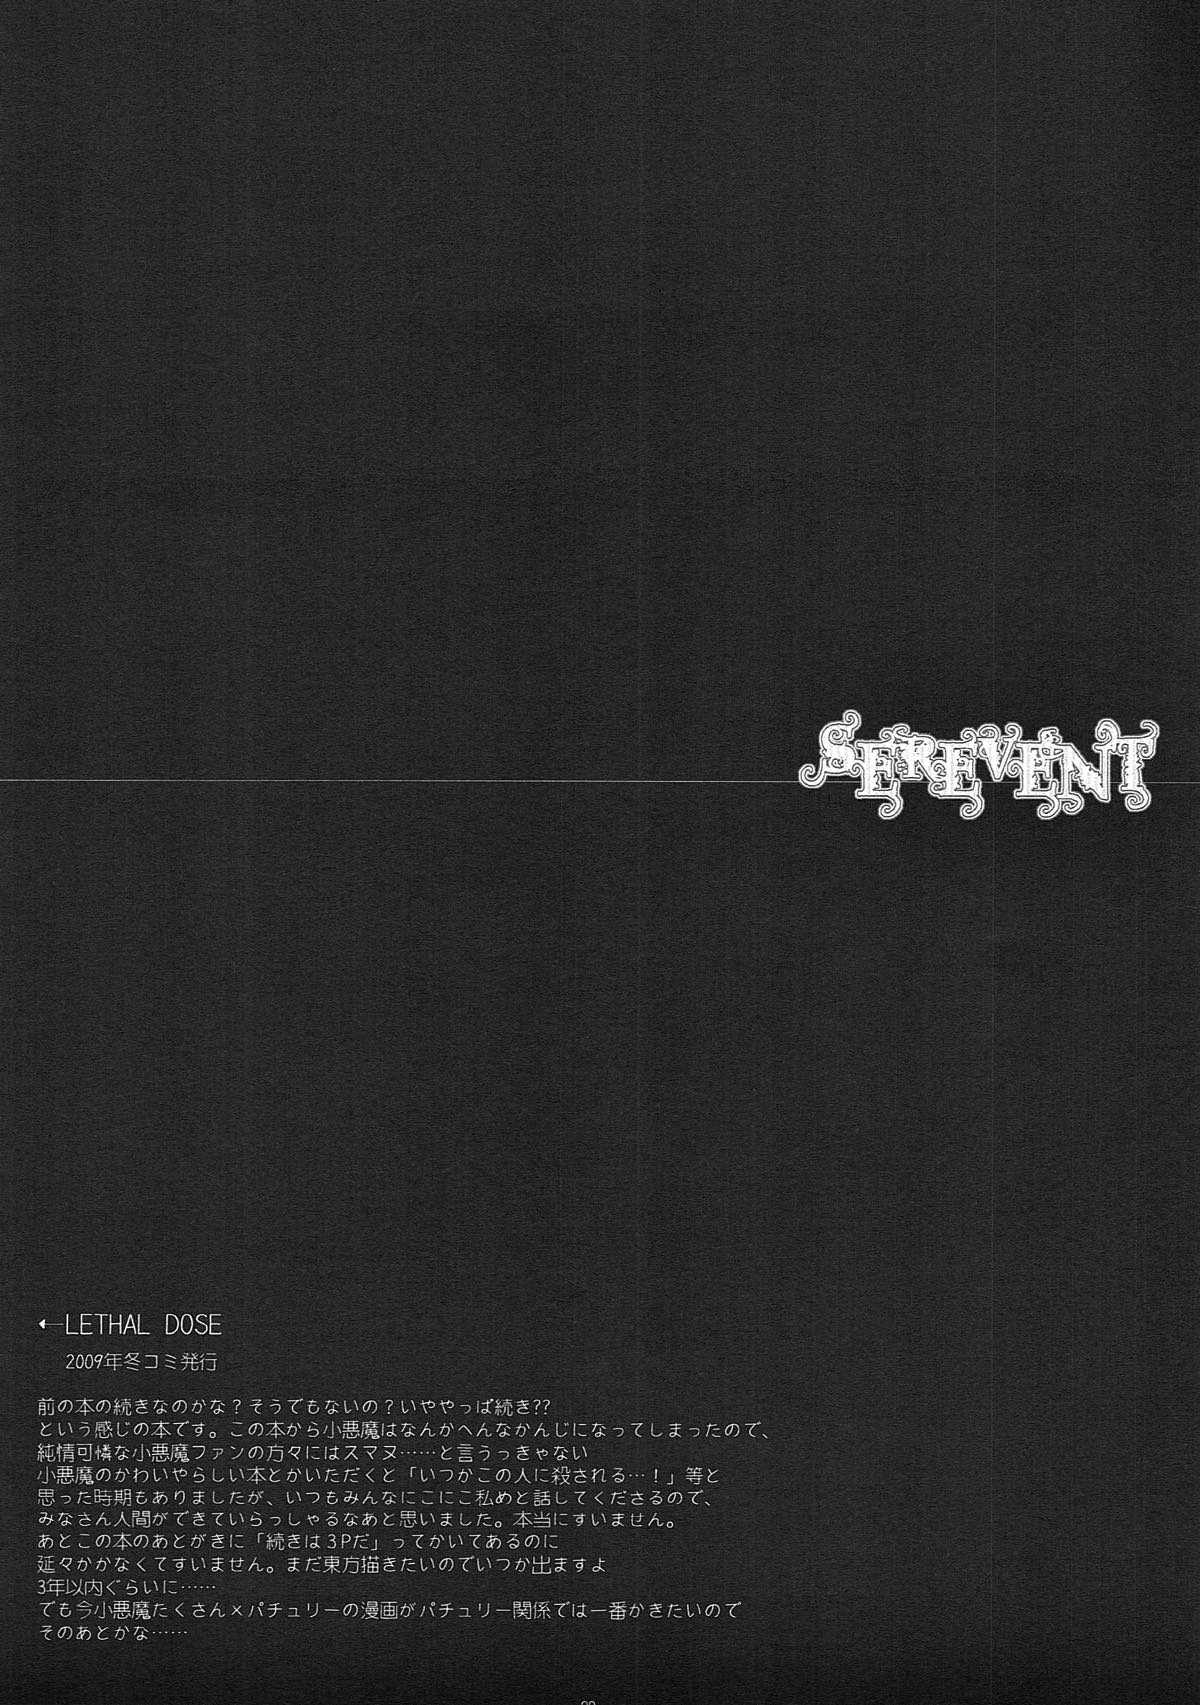 (例大祭10) [D・N・A.Lab. (ミヤスリサ)] SEREVENT (東方Project)